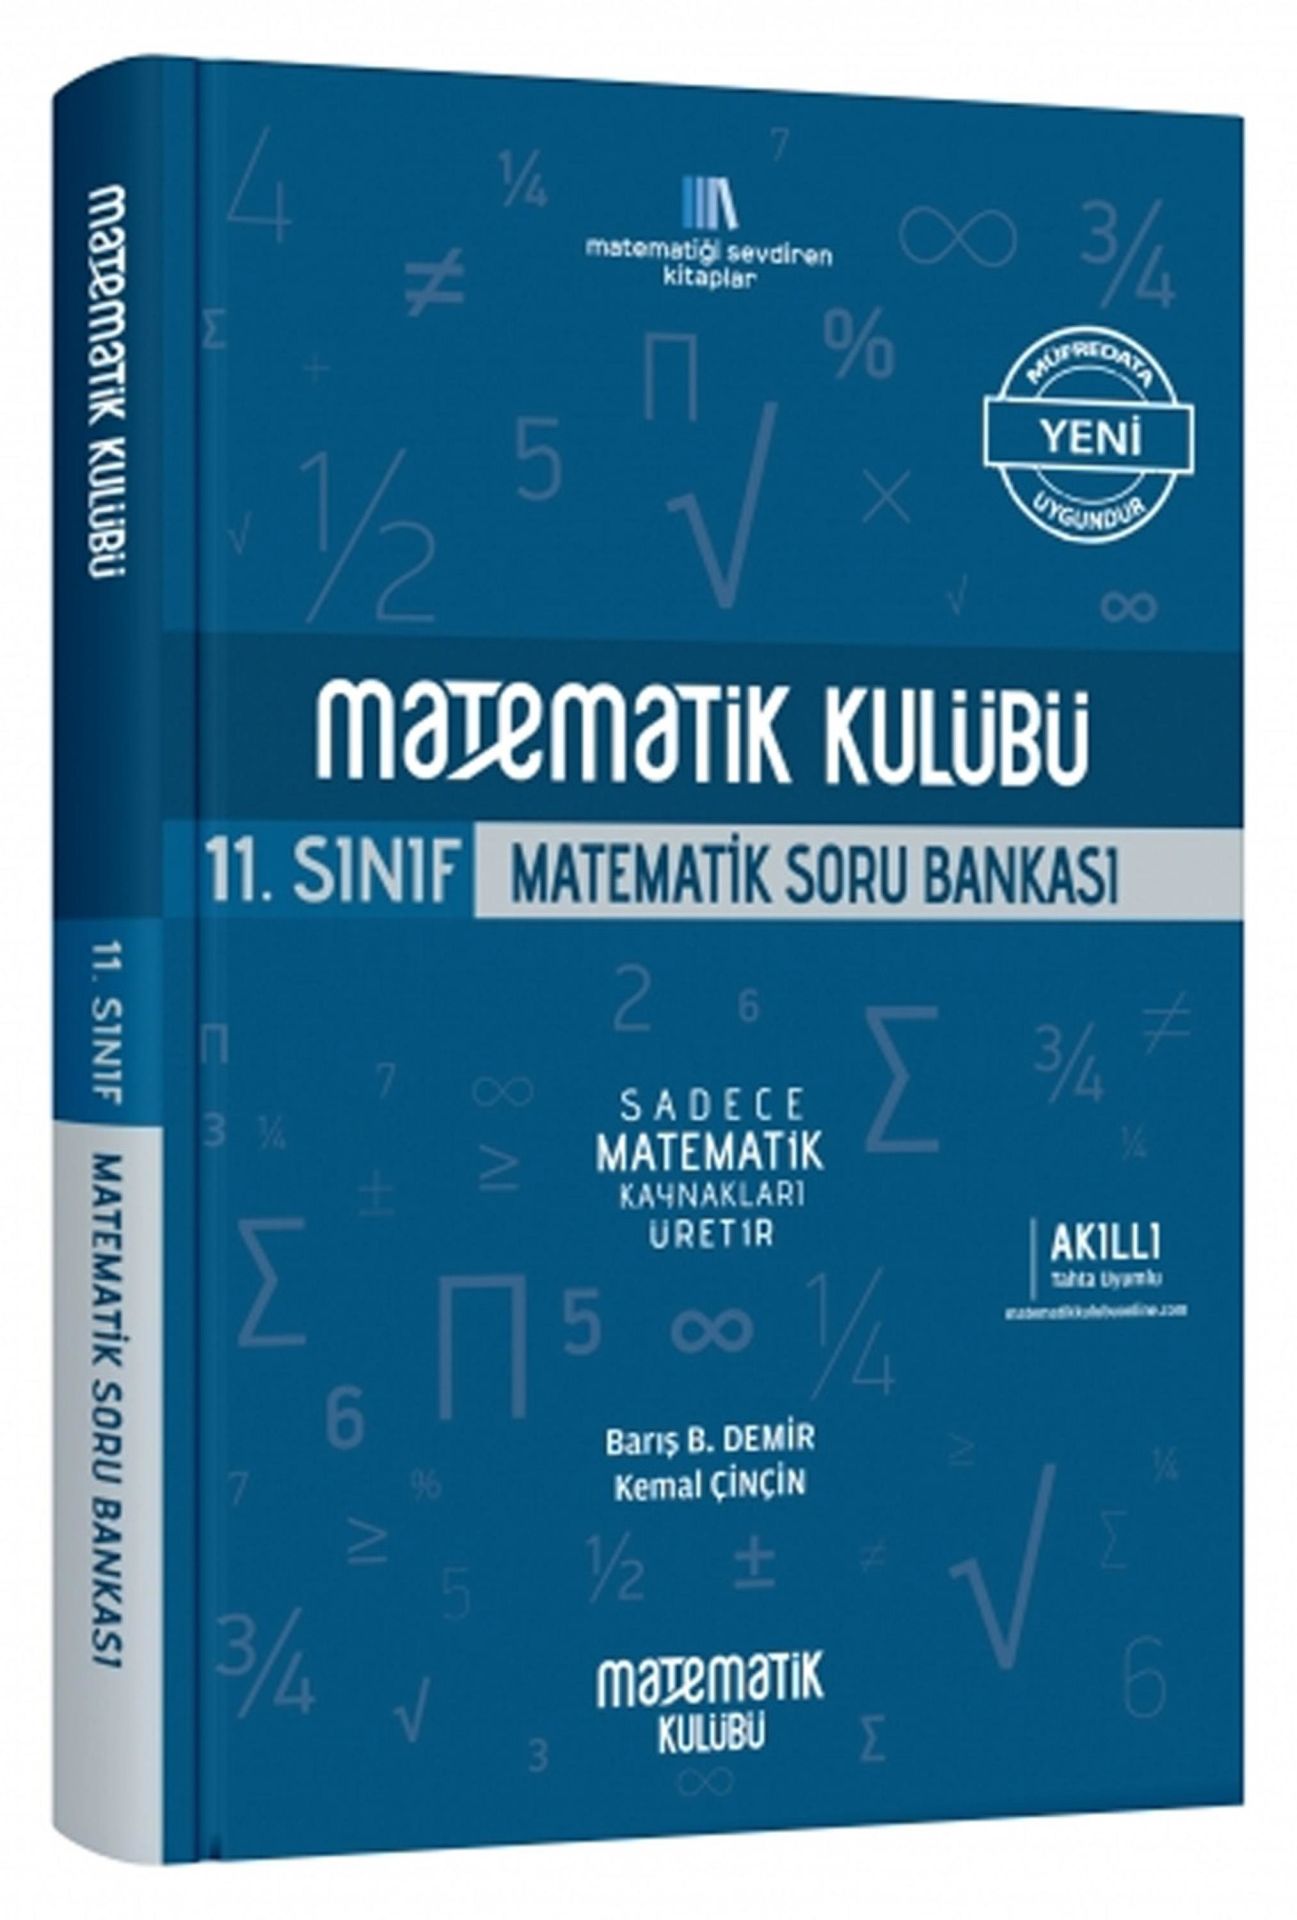 Matematik Kulübü 11. Sınıf Matematik Soru Bankası